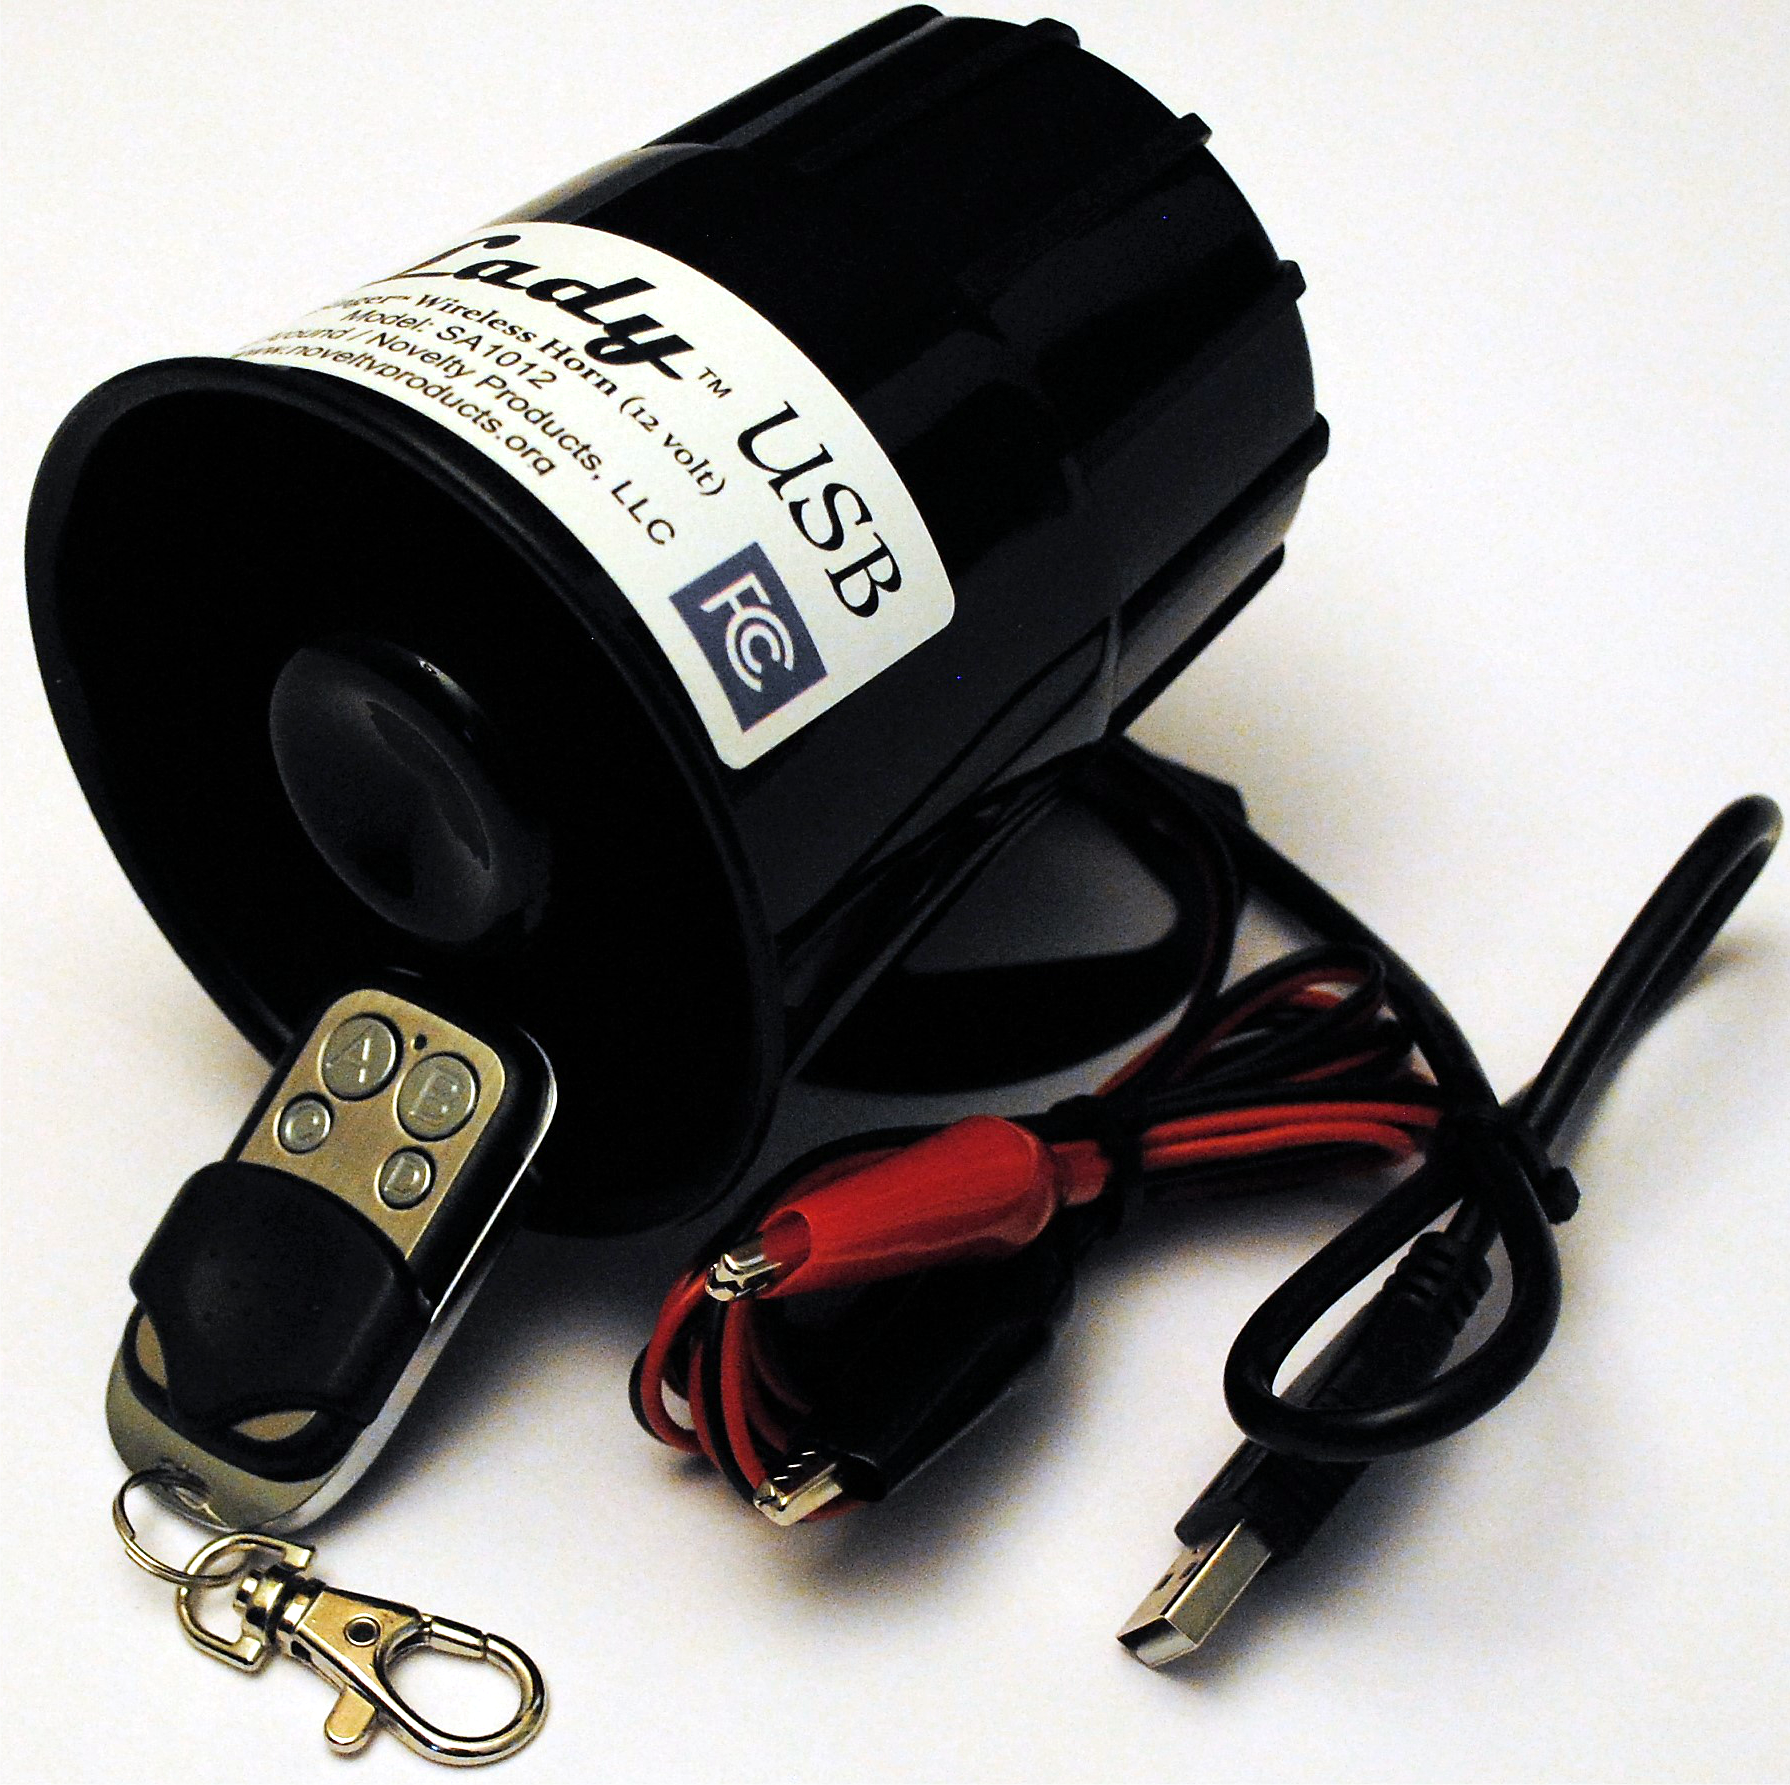 Marine Hymn USB Car Horn with Wireless KeyFOB Remote